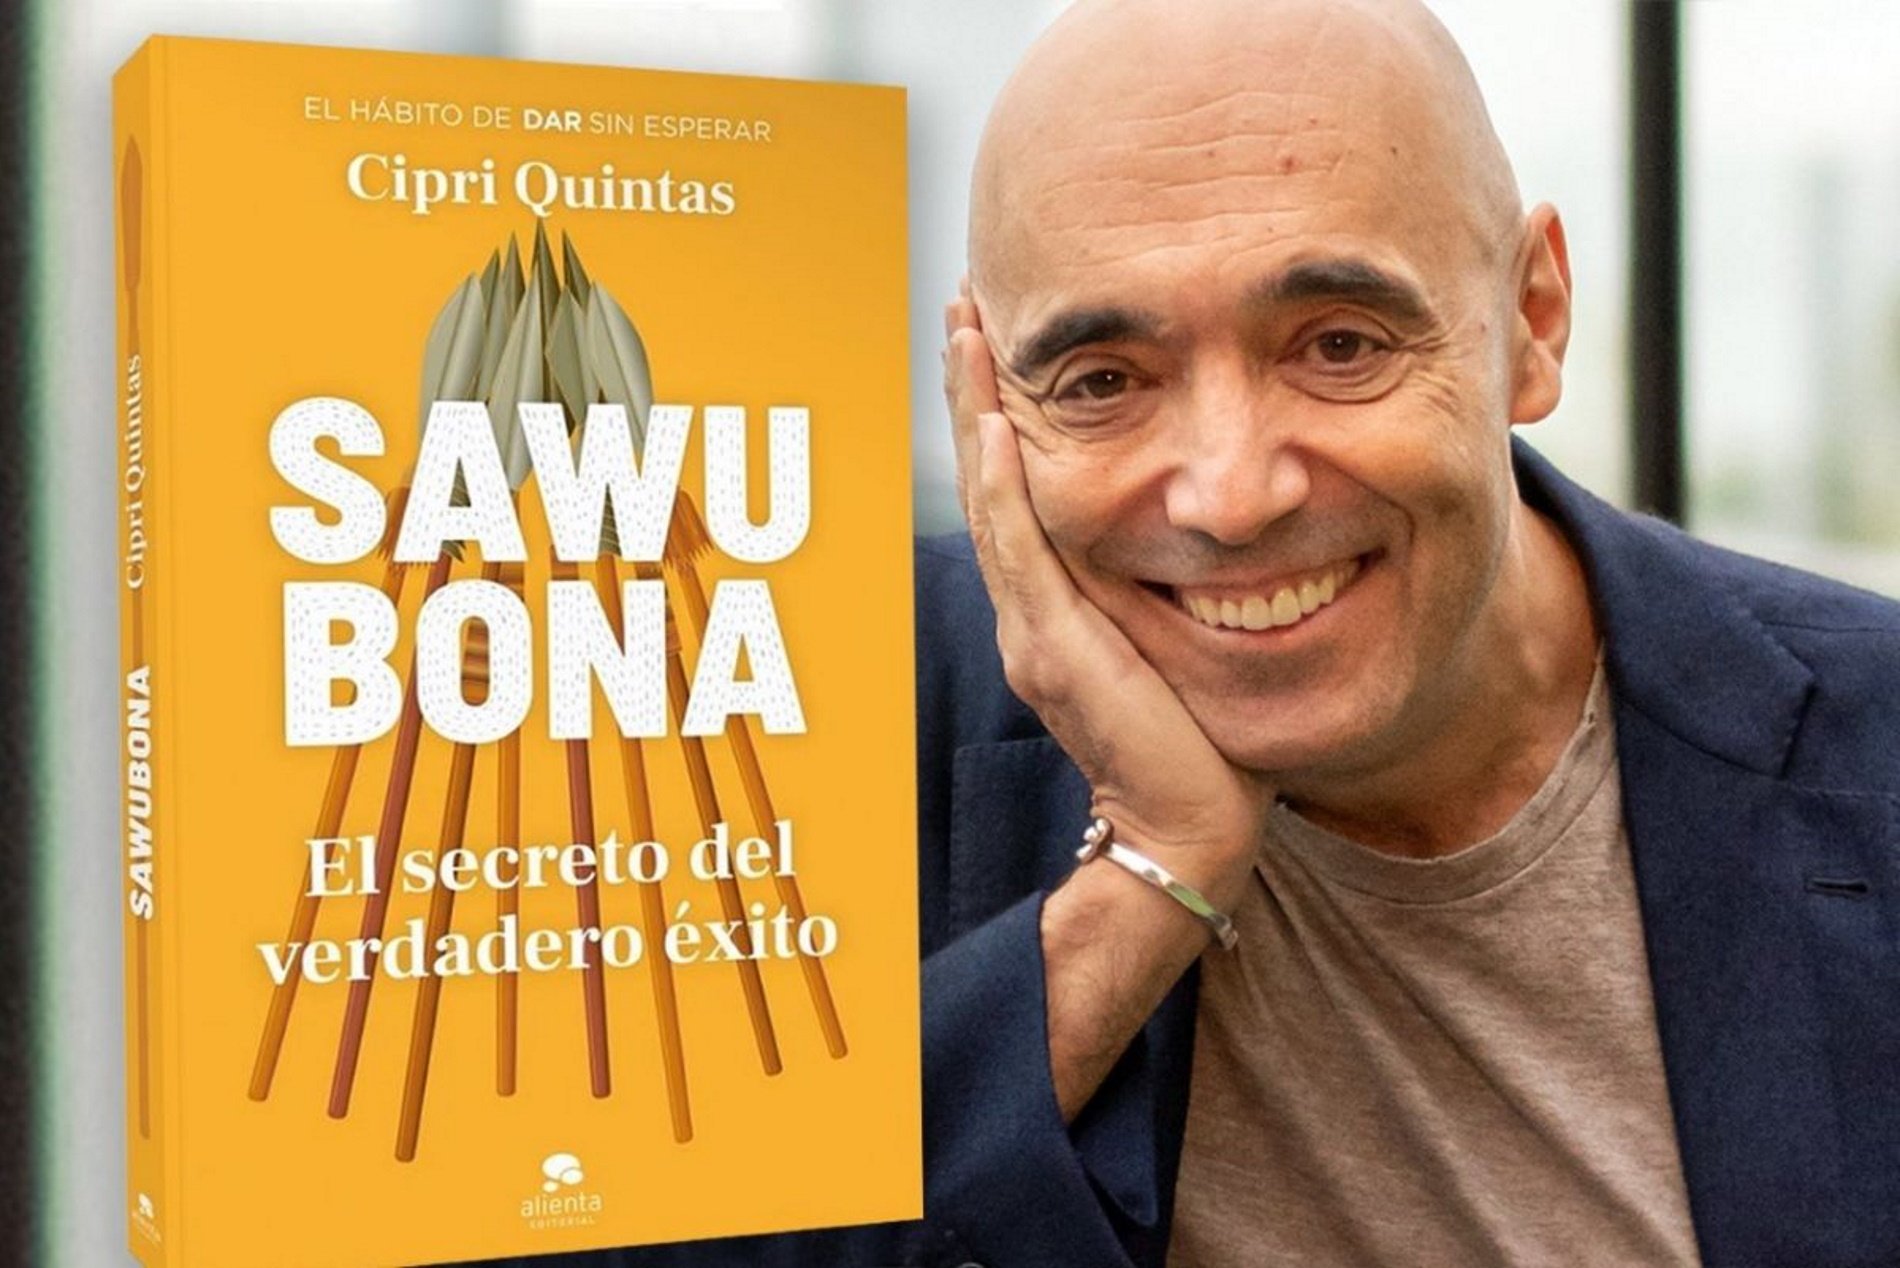 Cipri Quintas descobreix "El secret del veritable èxit" al seu nou llibre